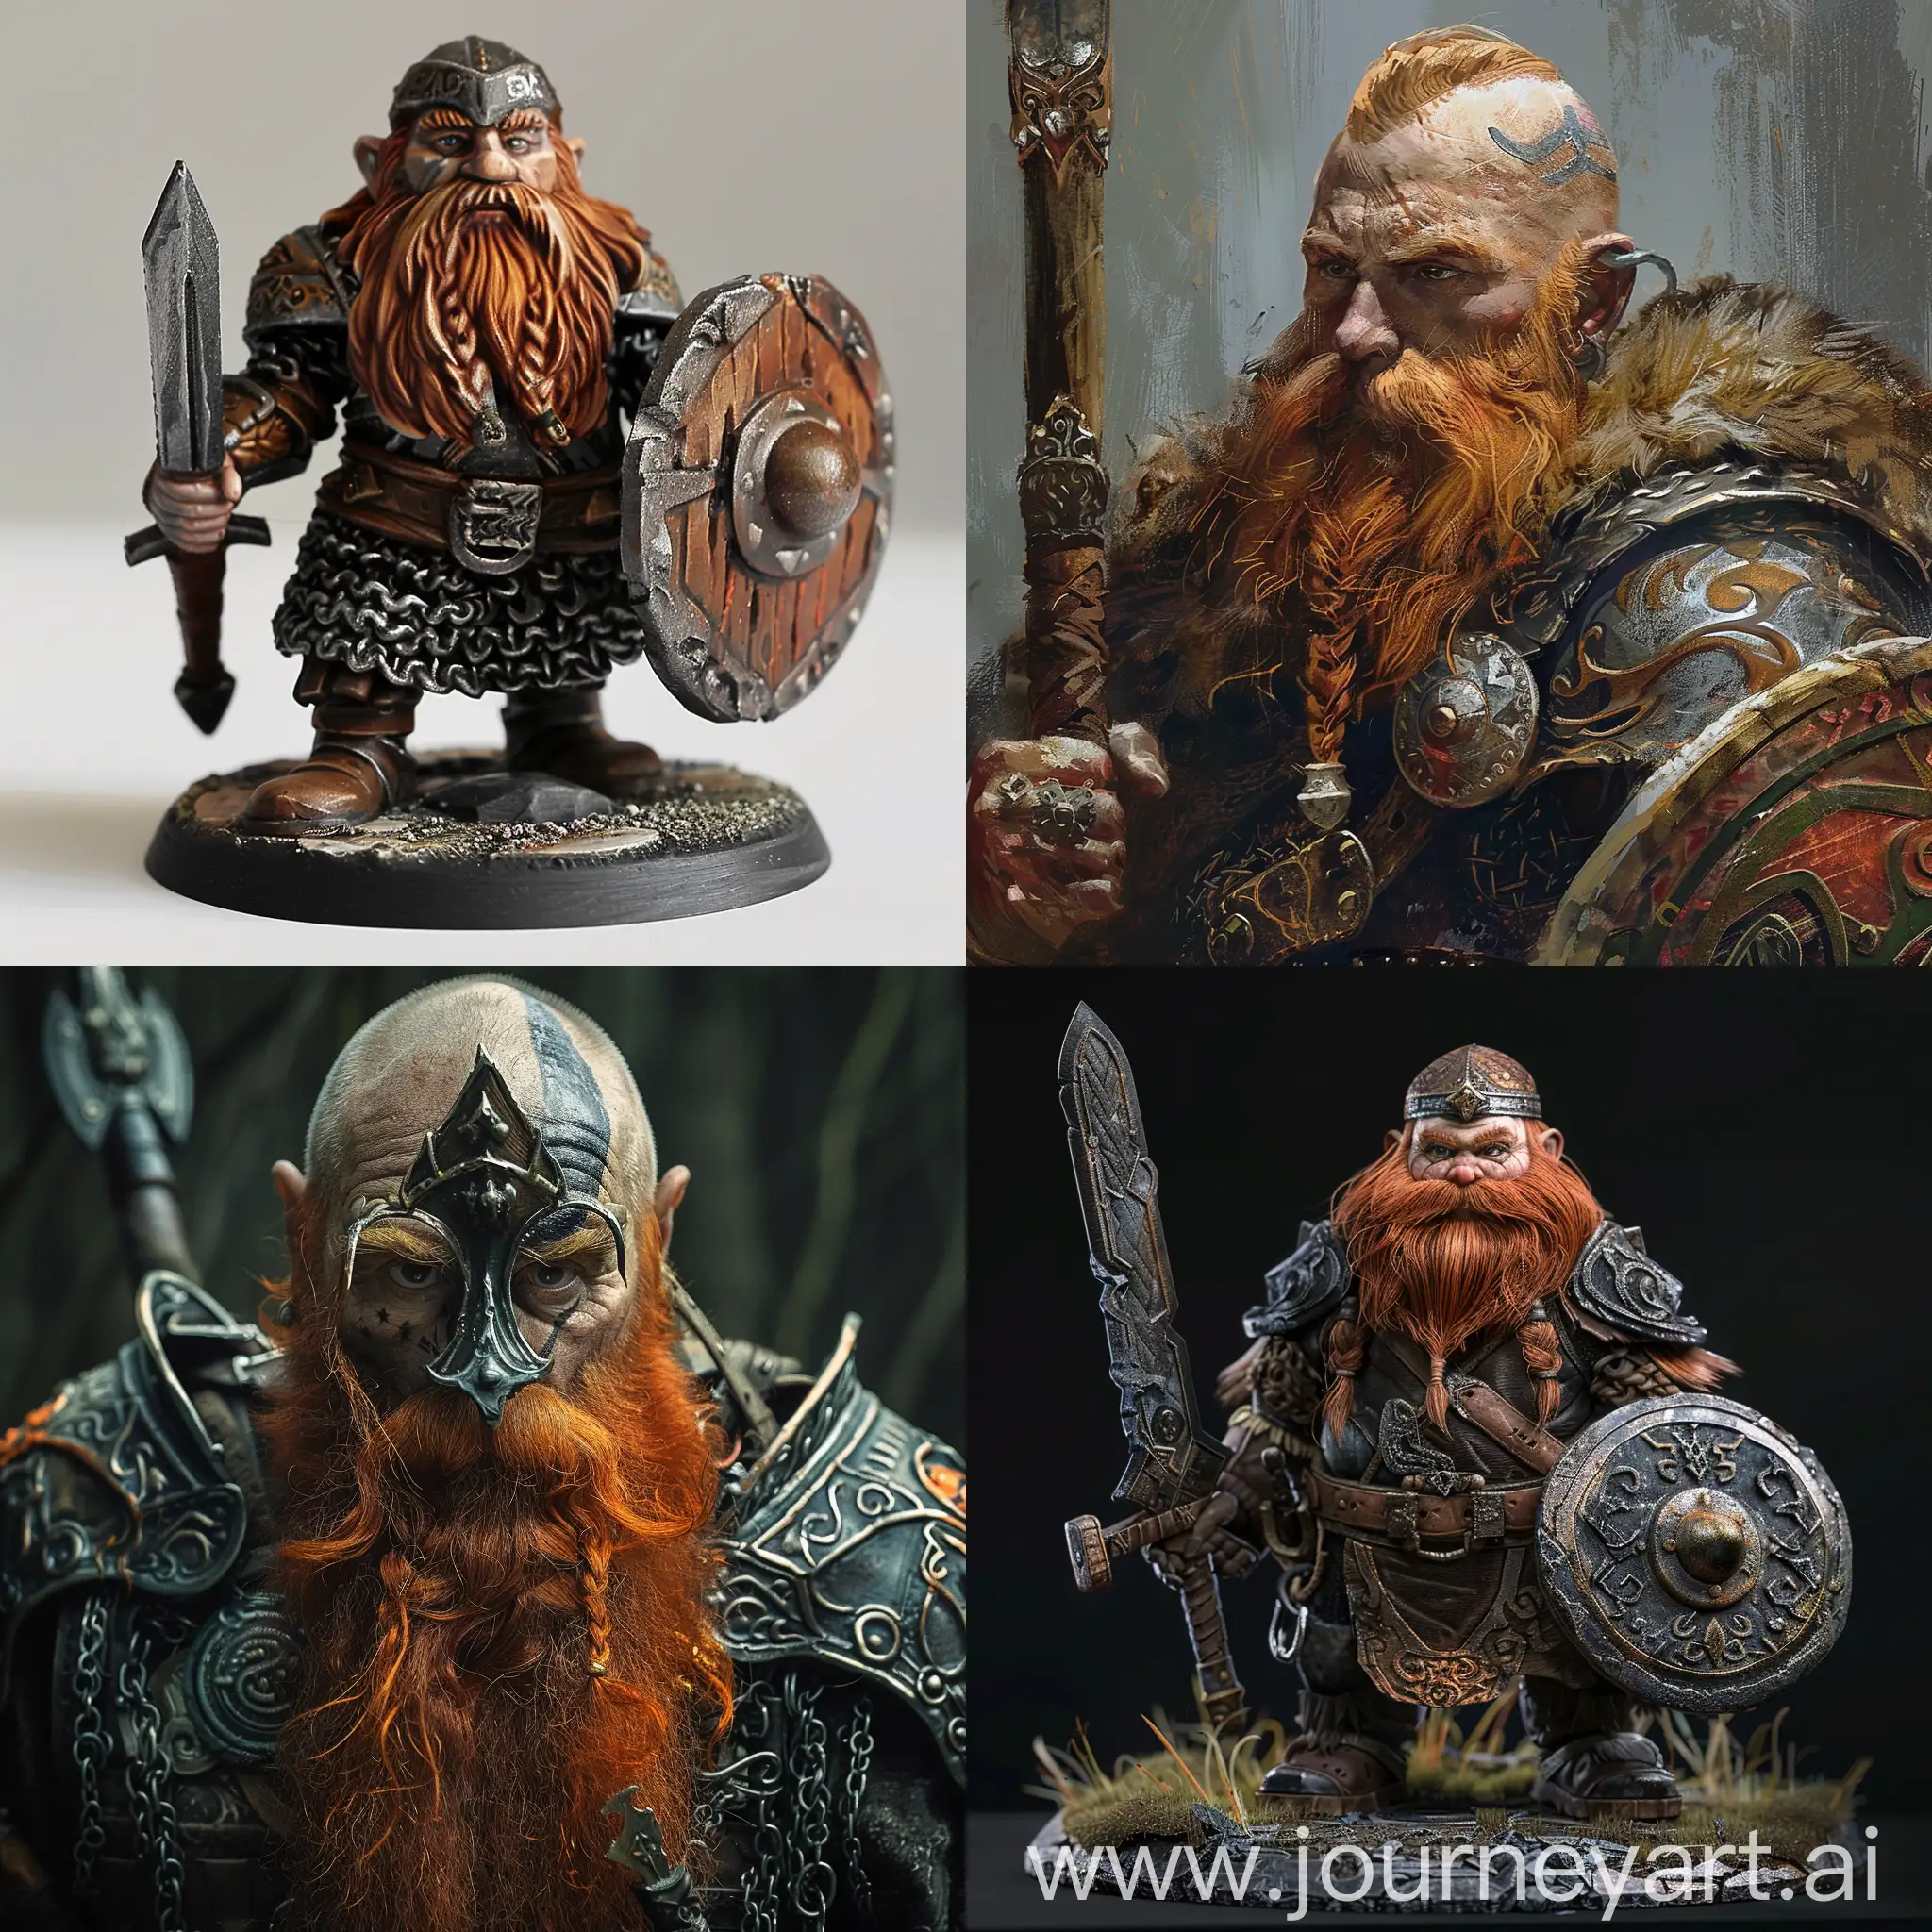 RedBearded-Dwarf-Warrior-in-Epic-Battle